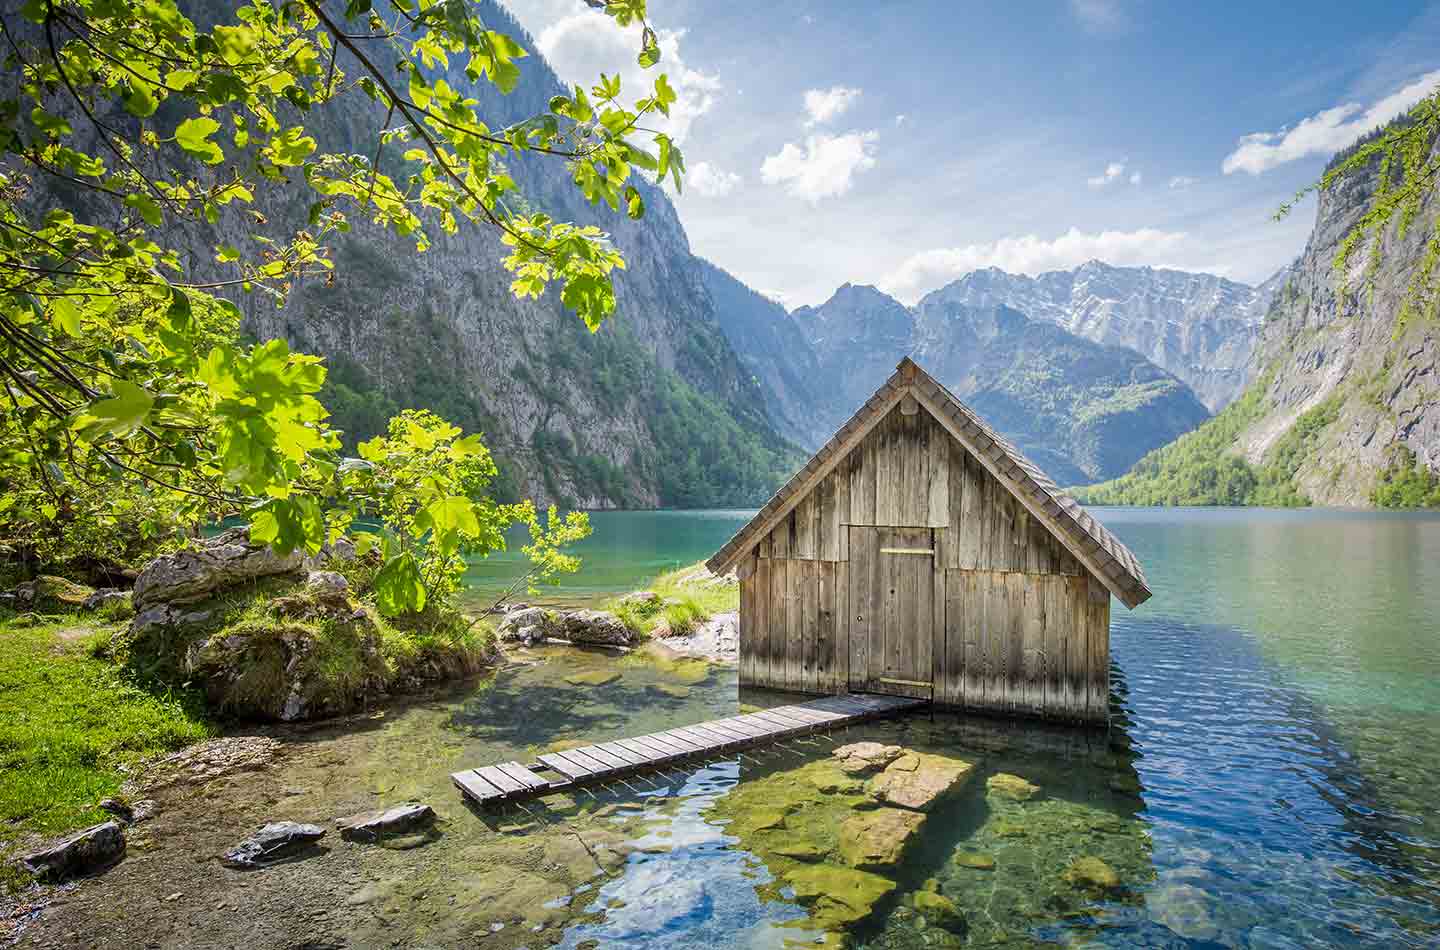 Hütte mit Steg auf Bergsee. Im Hintergrund ist der See umrahmt von den steilen Felskanten der Alpen